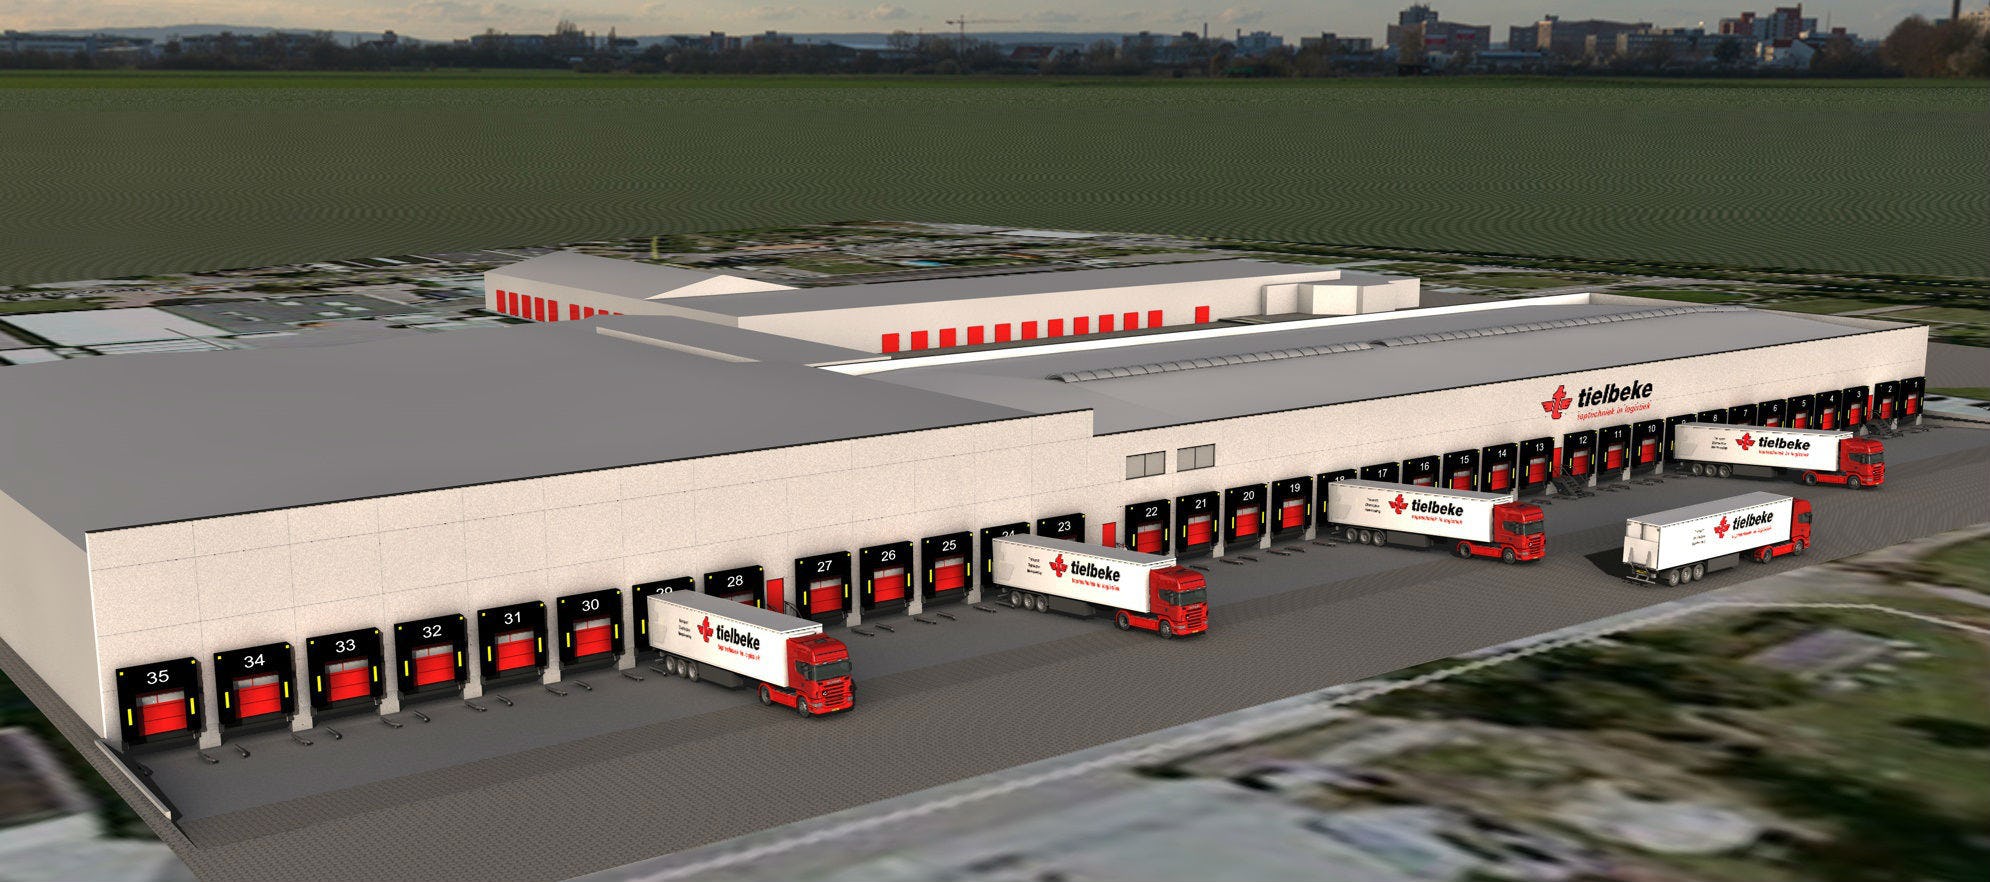 Tielbeke laat in fases nieuw logistiek centrum bouwen